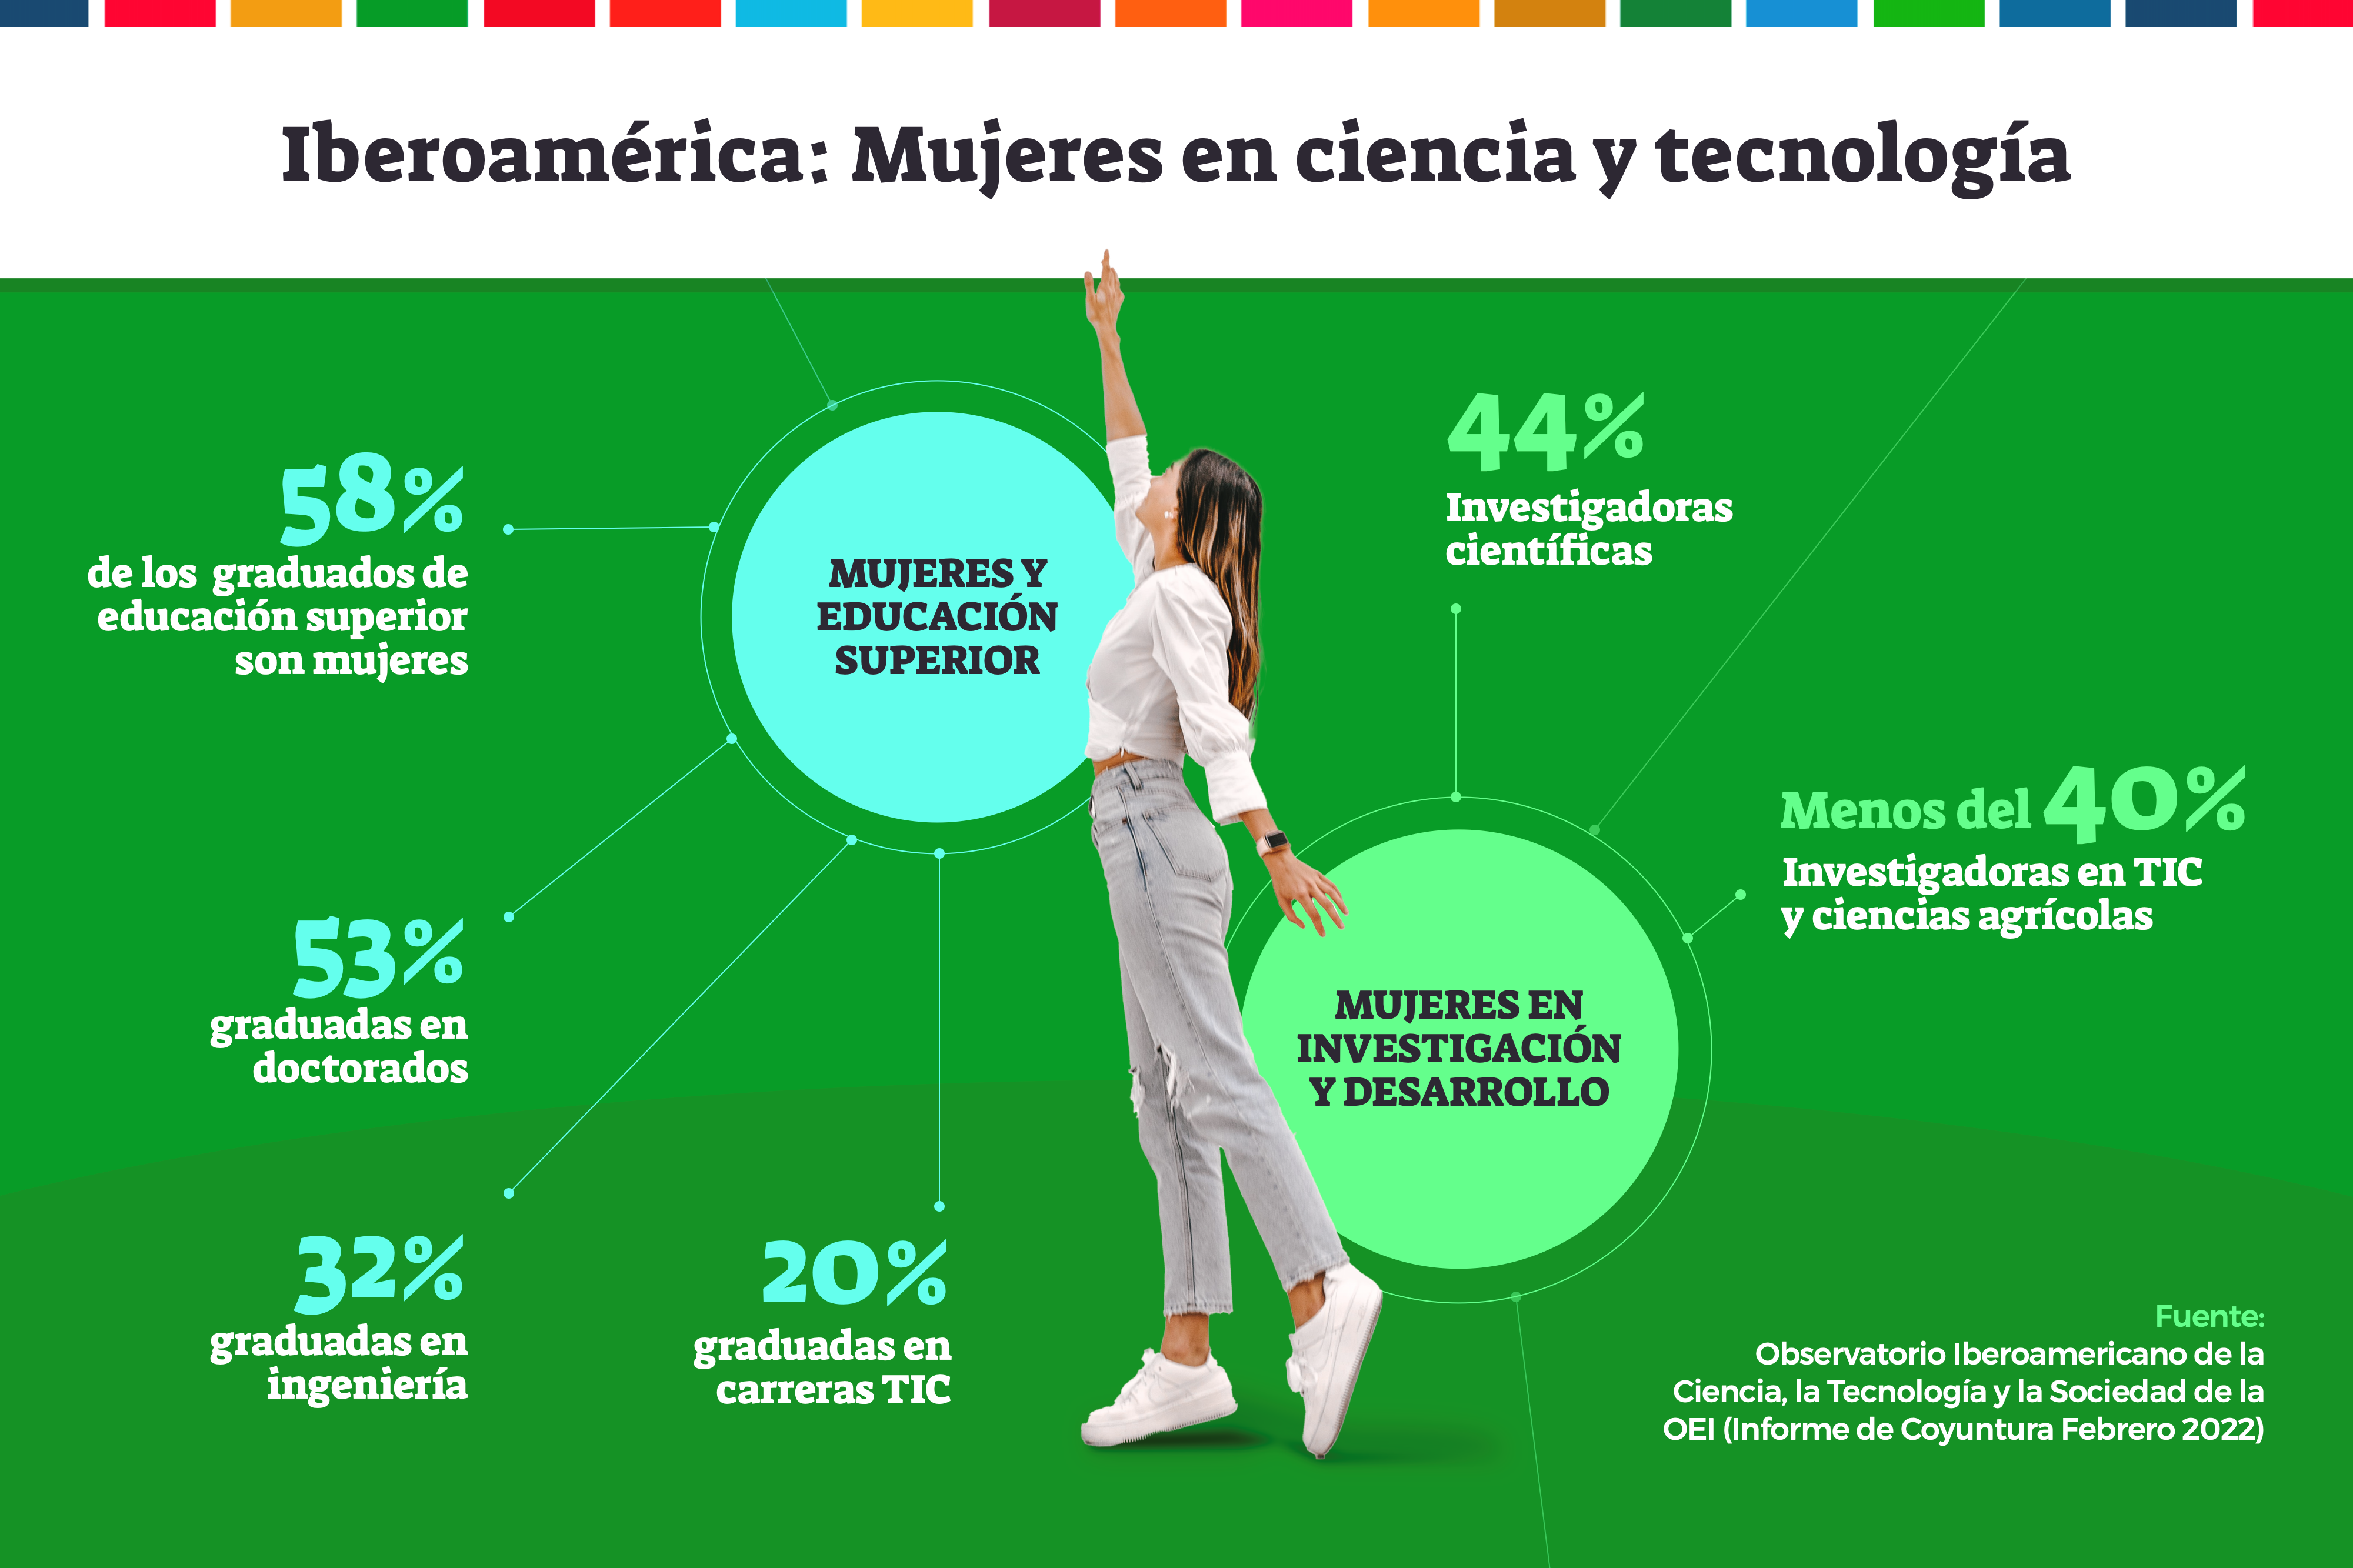 Seminario minusválido Agacharse Por qué las mujeres son minoría en ciencia y tecnología? - Somos  Iberoamérica / Somos Ibero-América